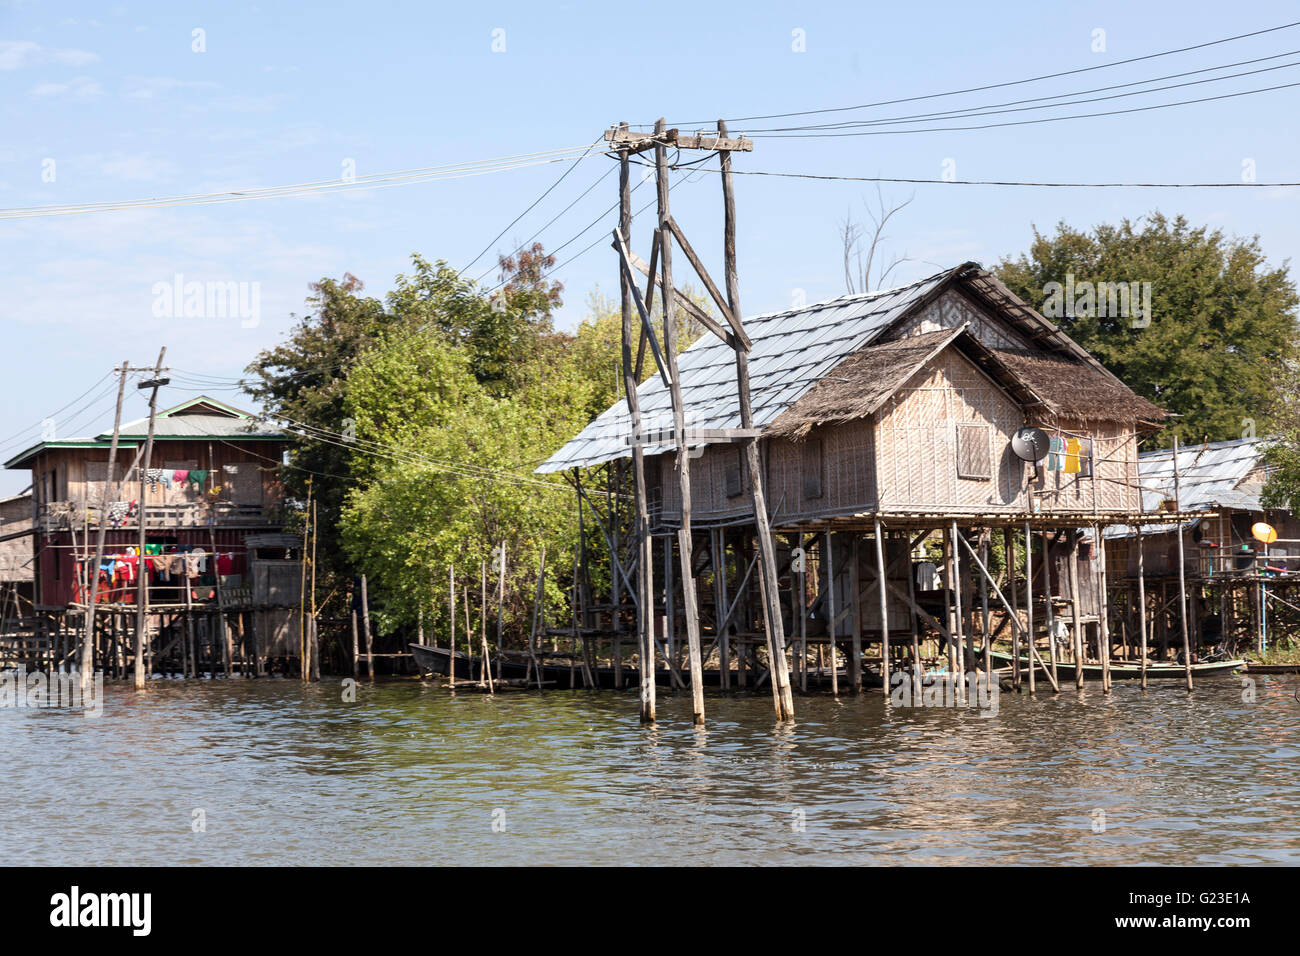 Luz y encima de sus zancos, el Lago Inle casas sorprende por la variedad de sus formas y colores (Myanmar). Foto de stock